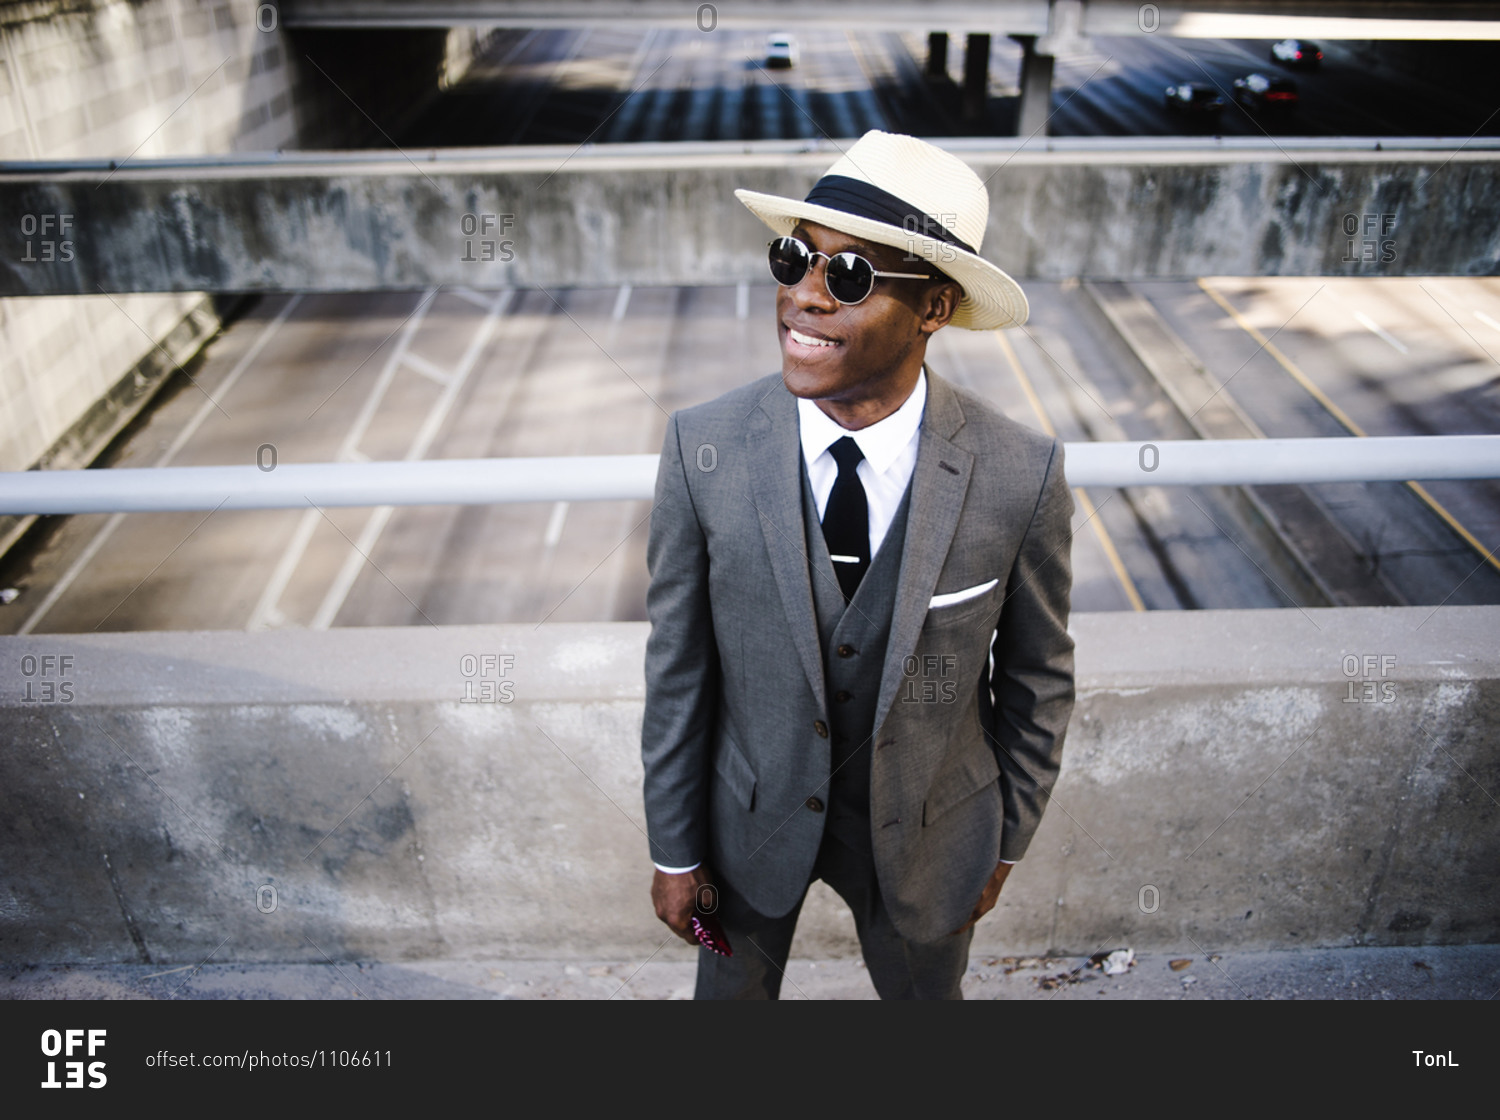 Nick Bosa suit & shades | Mens sunglasses, Men, Suits